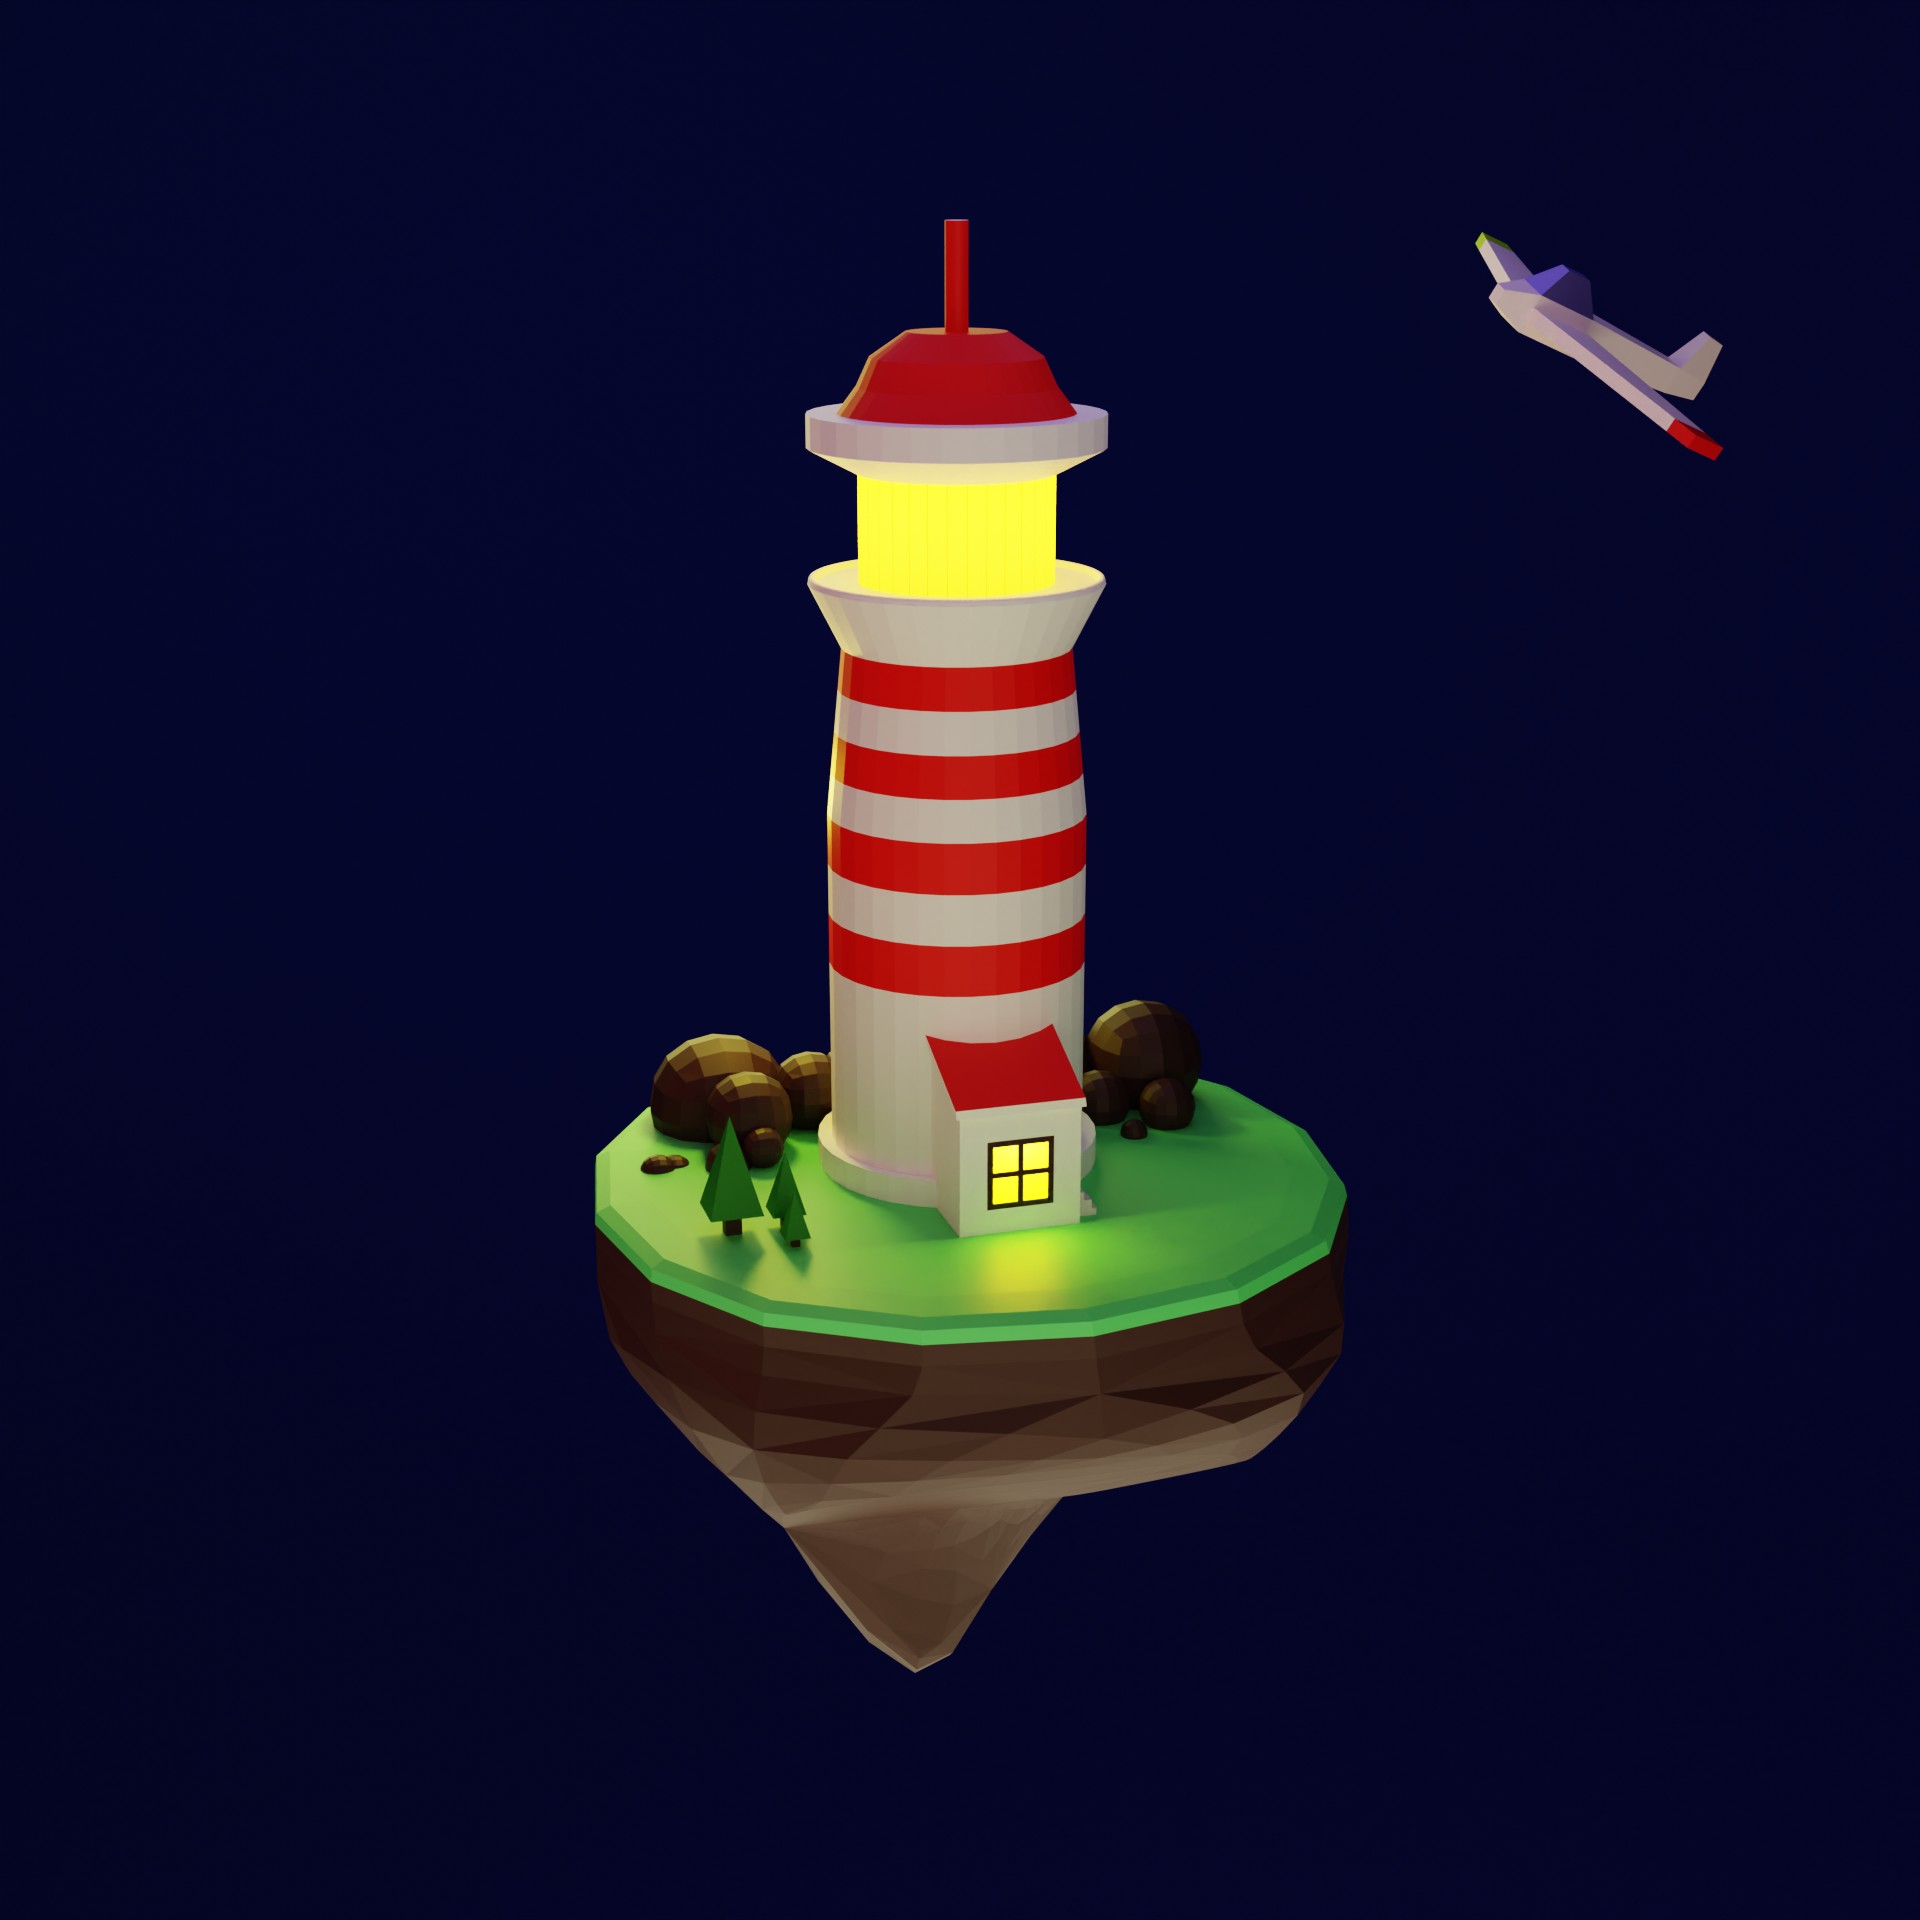 202203_Blender_Lighthouse